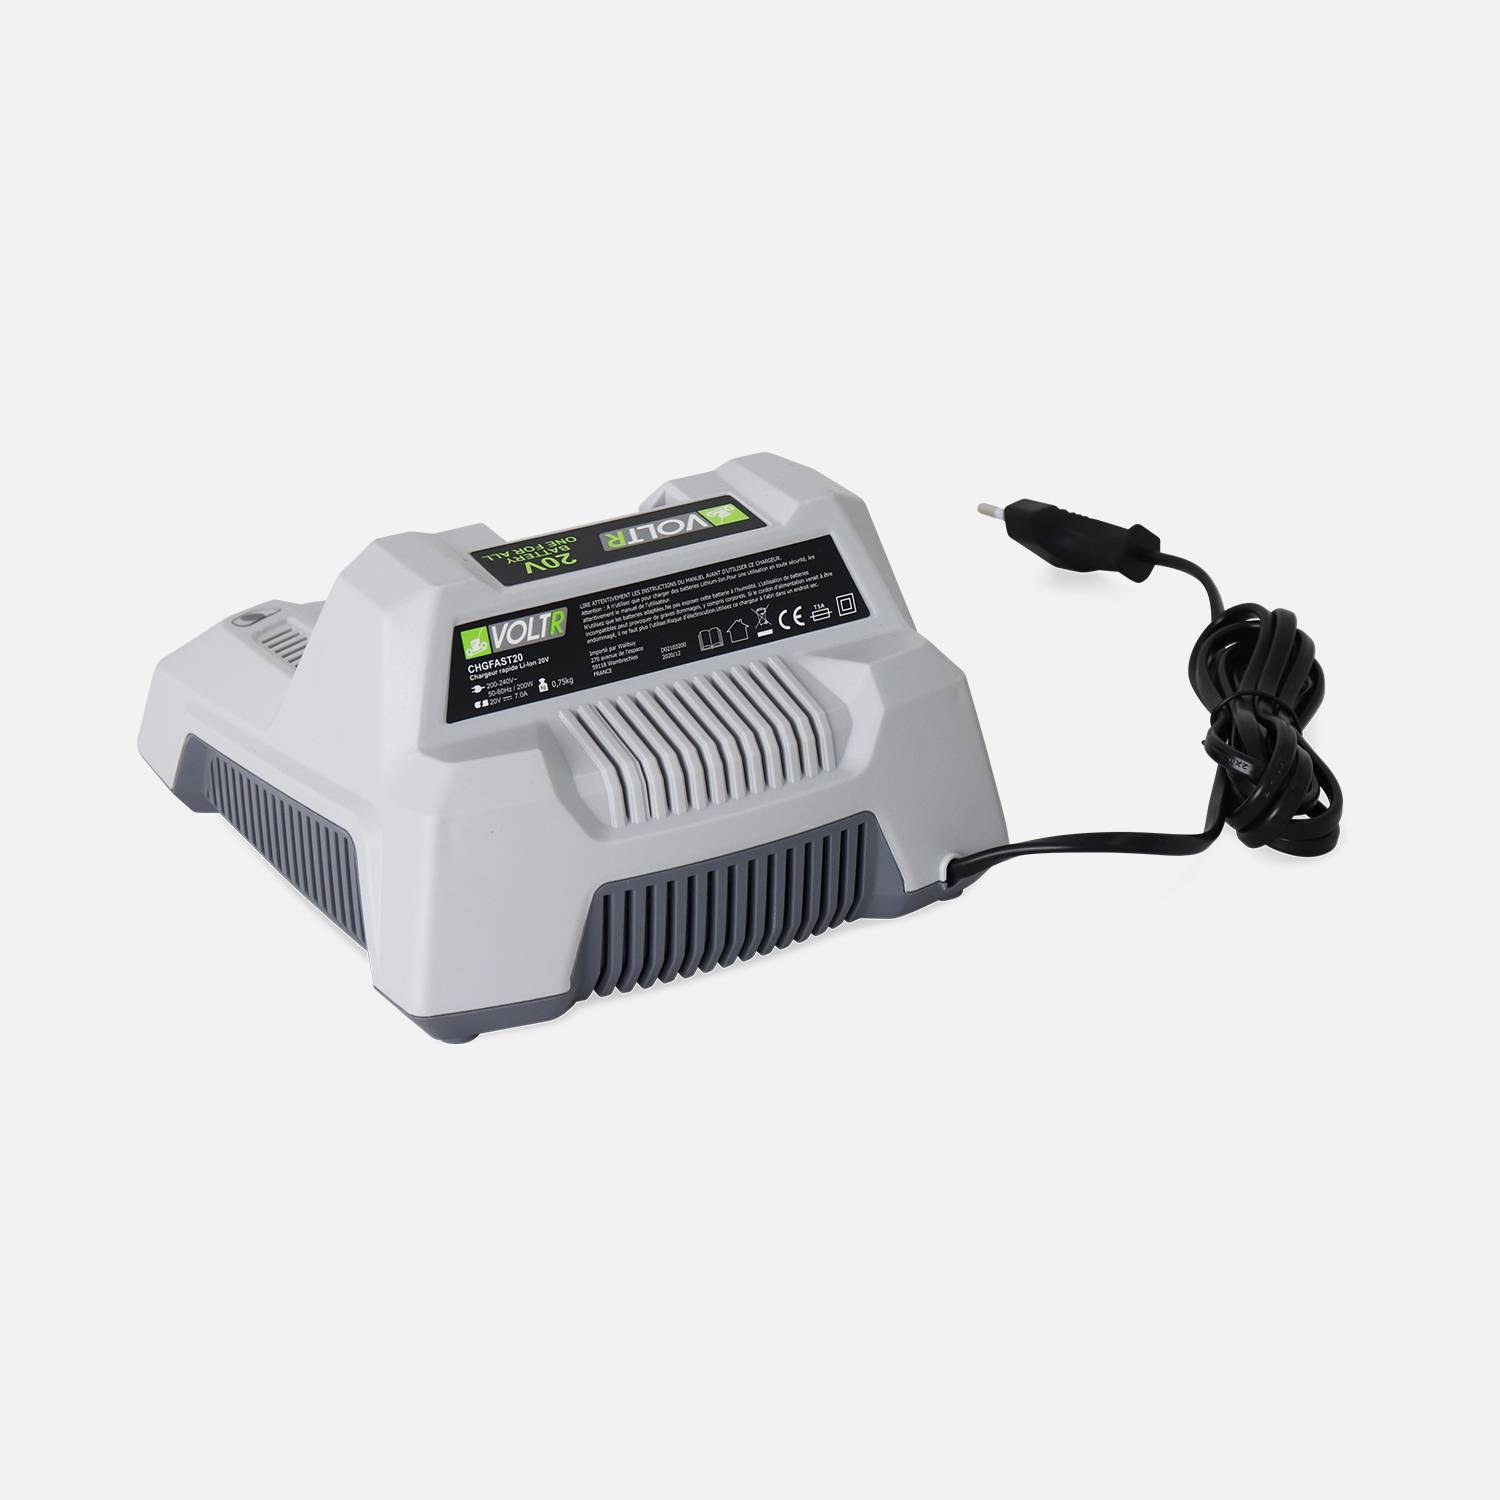 VOLTR 20V - Carregador ultrarrápido - Carregador de 1h para bateria de ferramentas sem fios VOLTR 20V, base com luz indicadora,sweeek,Photo2